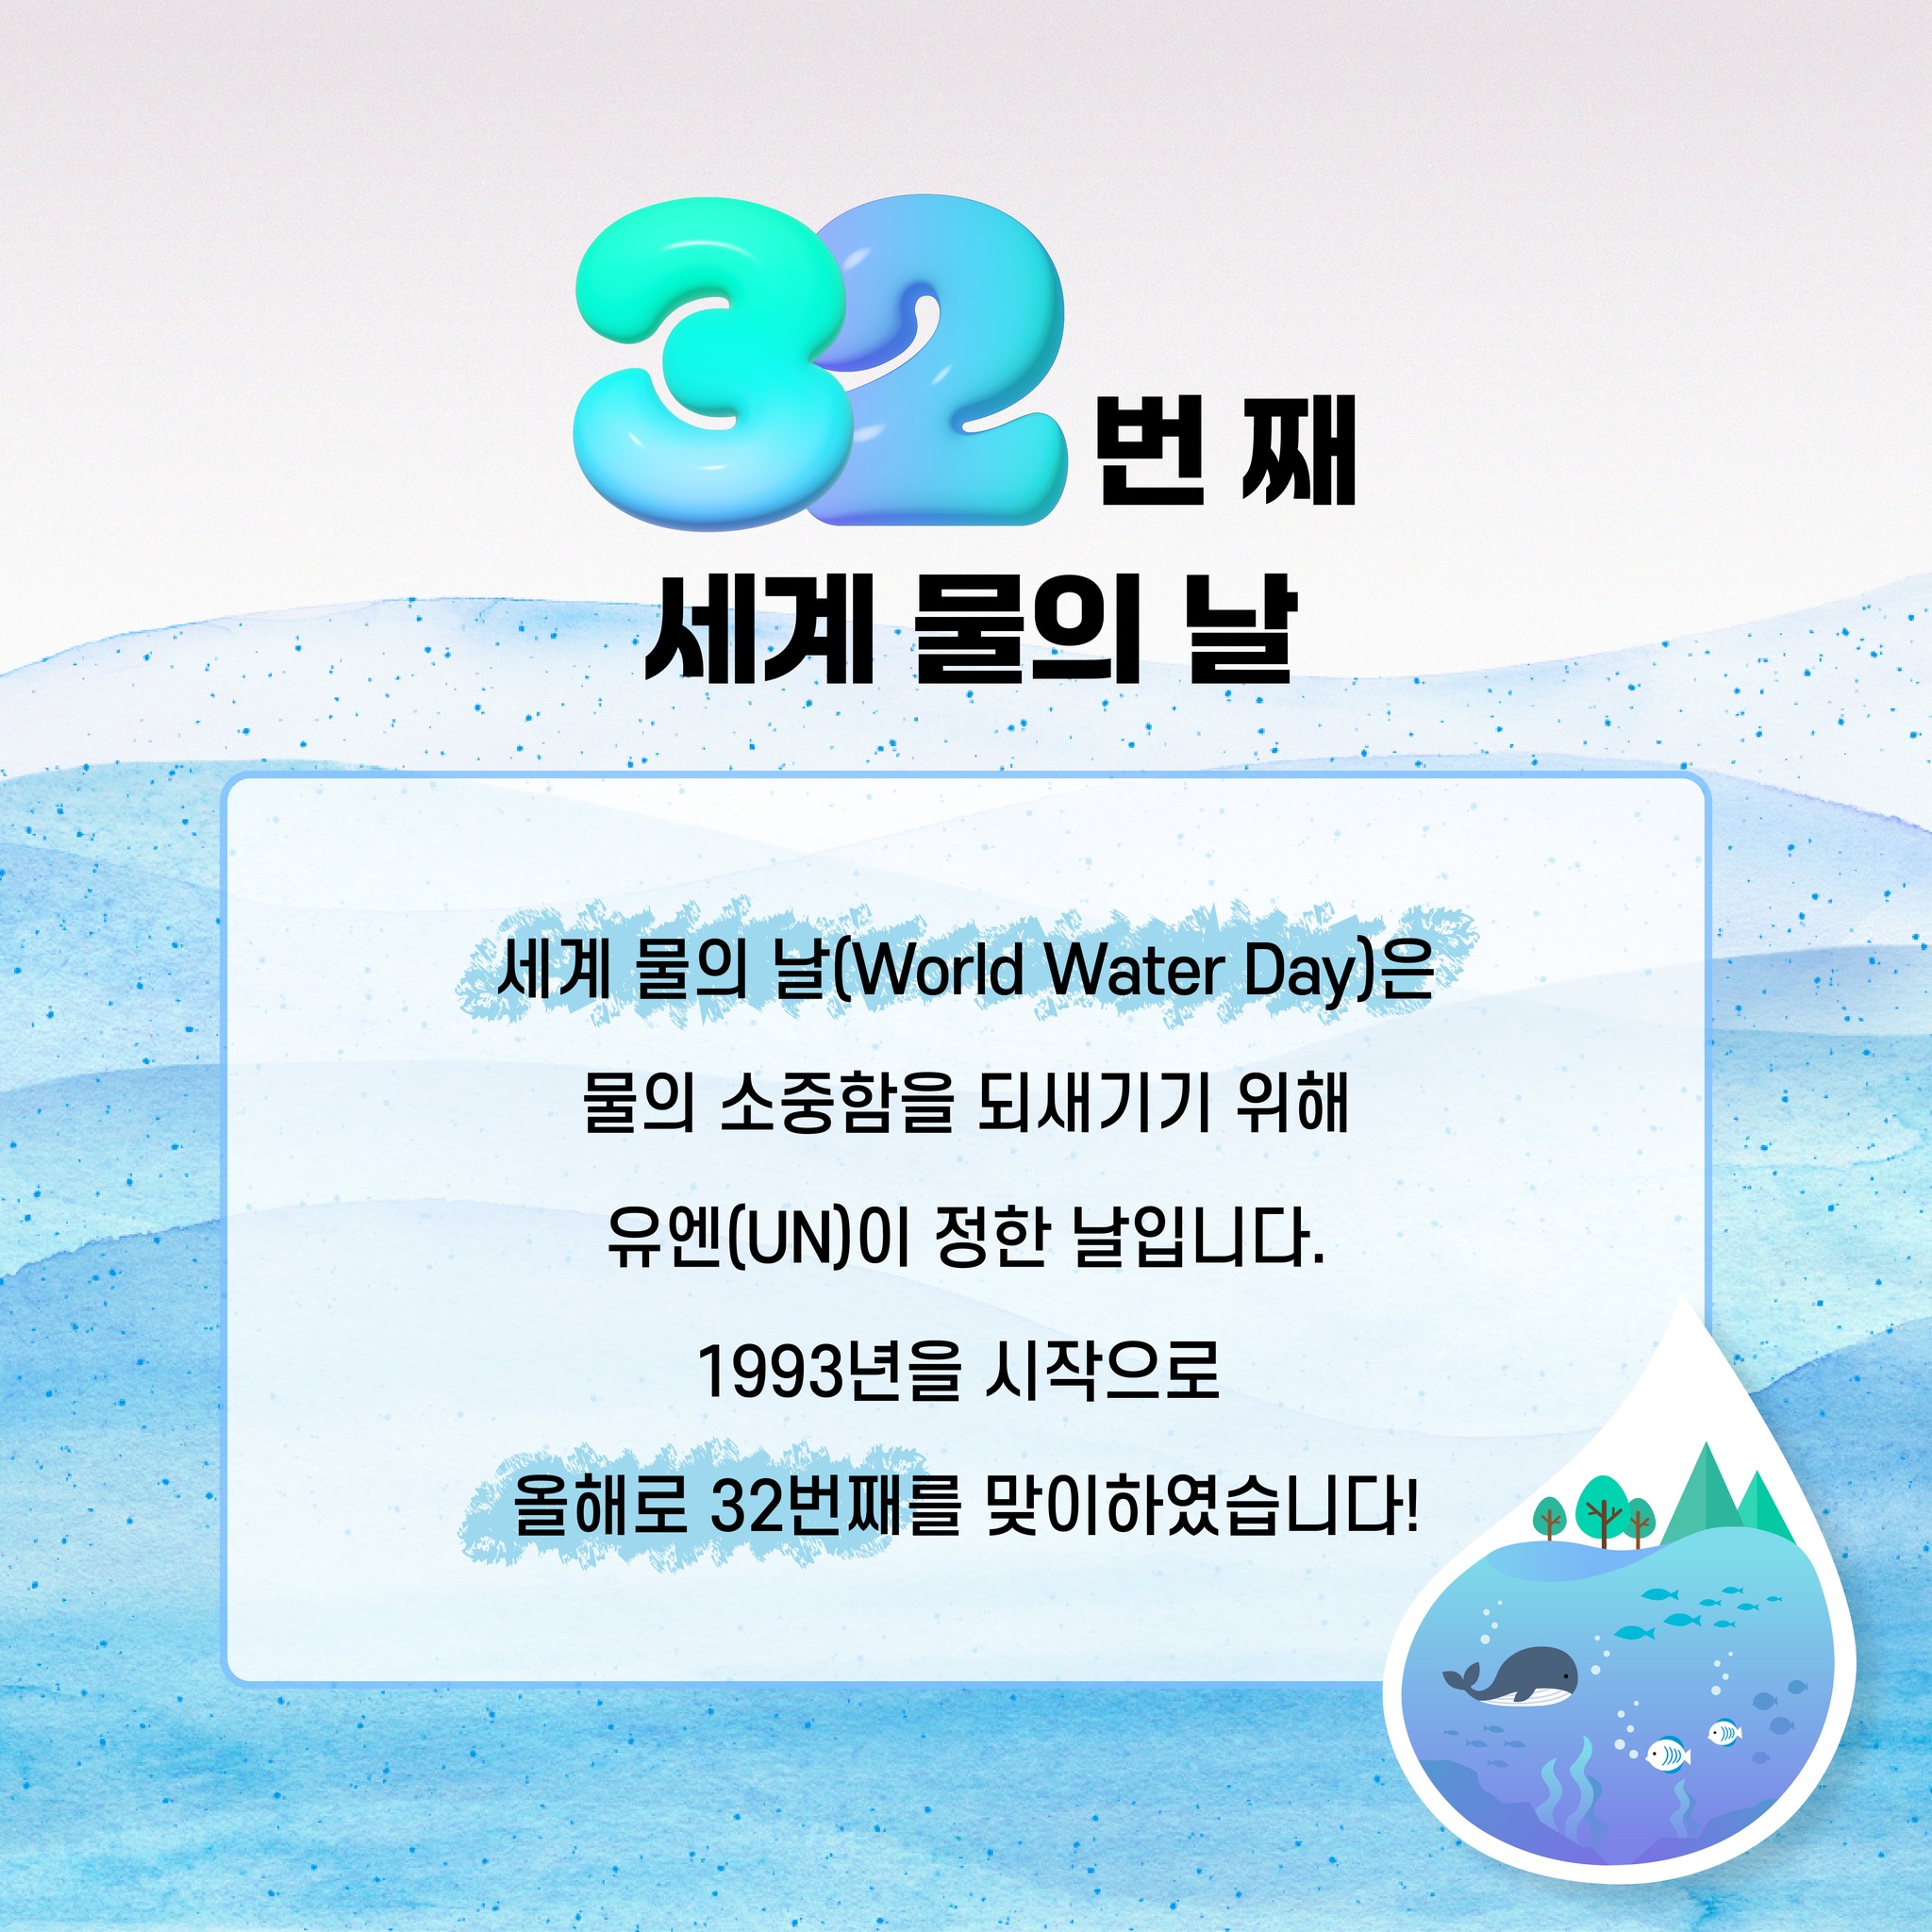 32번 째 세계 물의 날 세계 물의 날(World Water Day)은 물의 소중함을 되새기기 위해 유엔(UN)이 정한 날입니다. 1993년을 시작으로 올해로 32번째를 맞이하였습니다!